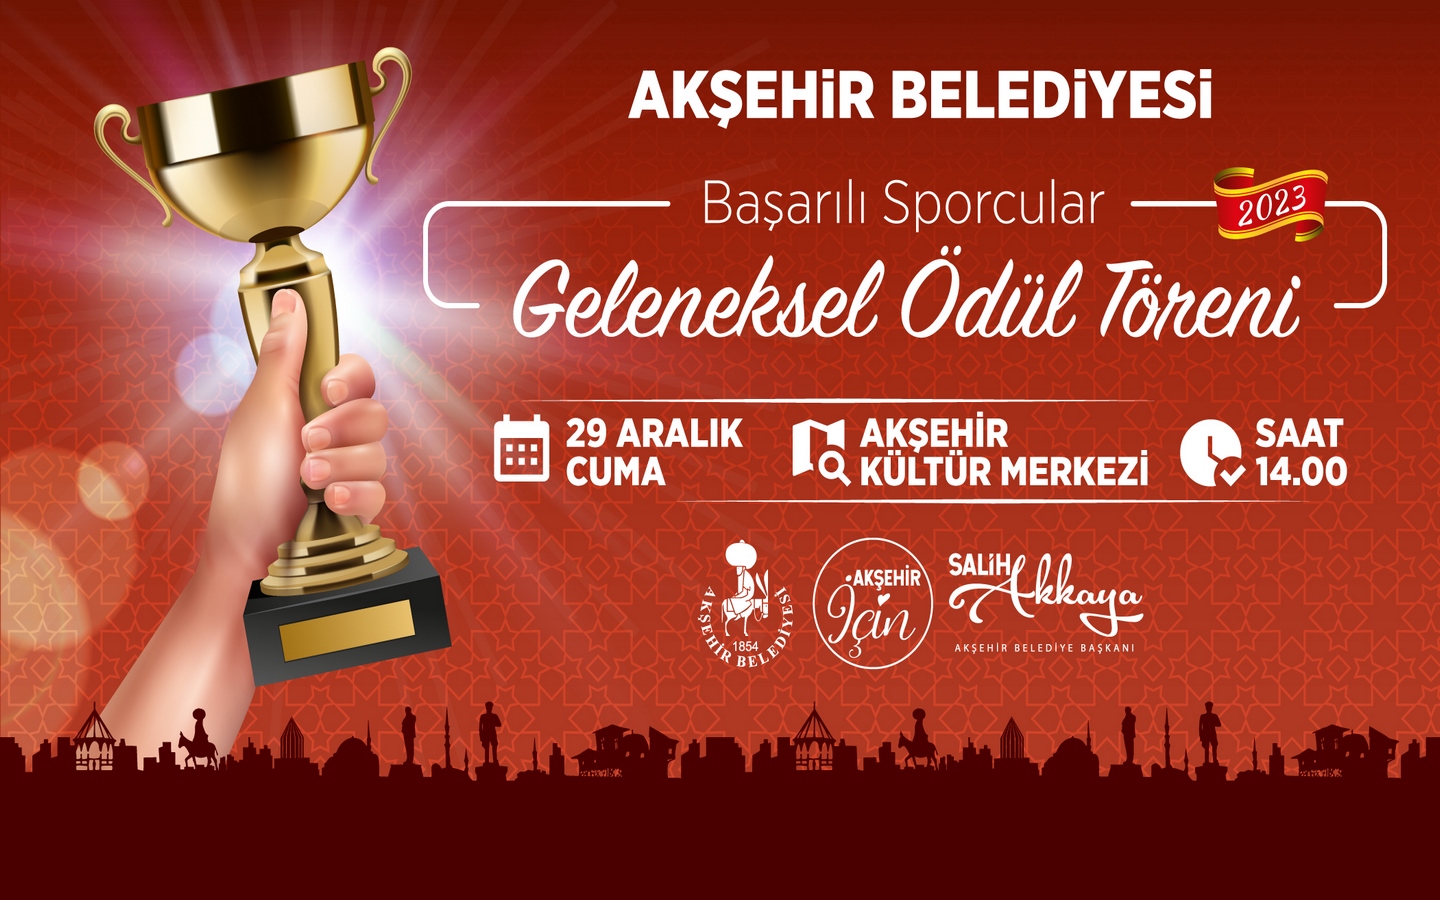 Akşehir'de başarılı sporcular ödüllendirilecek